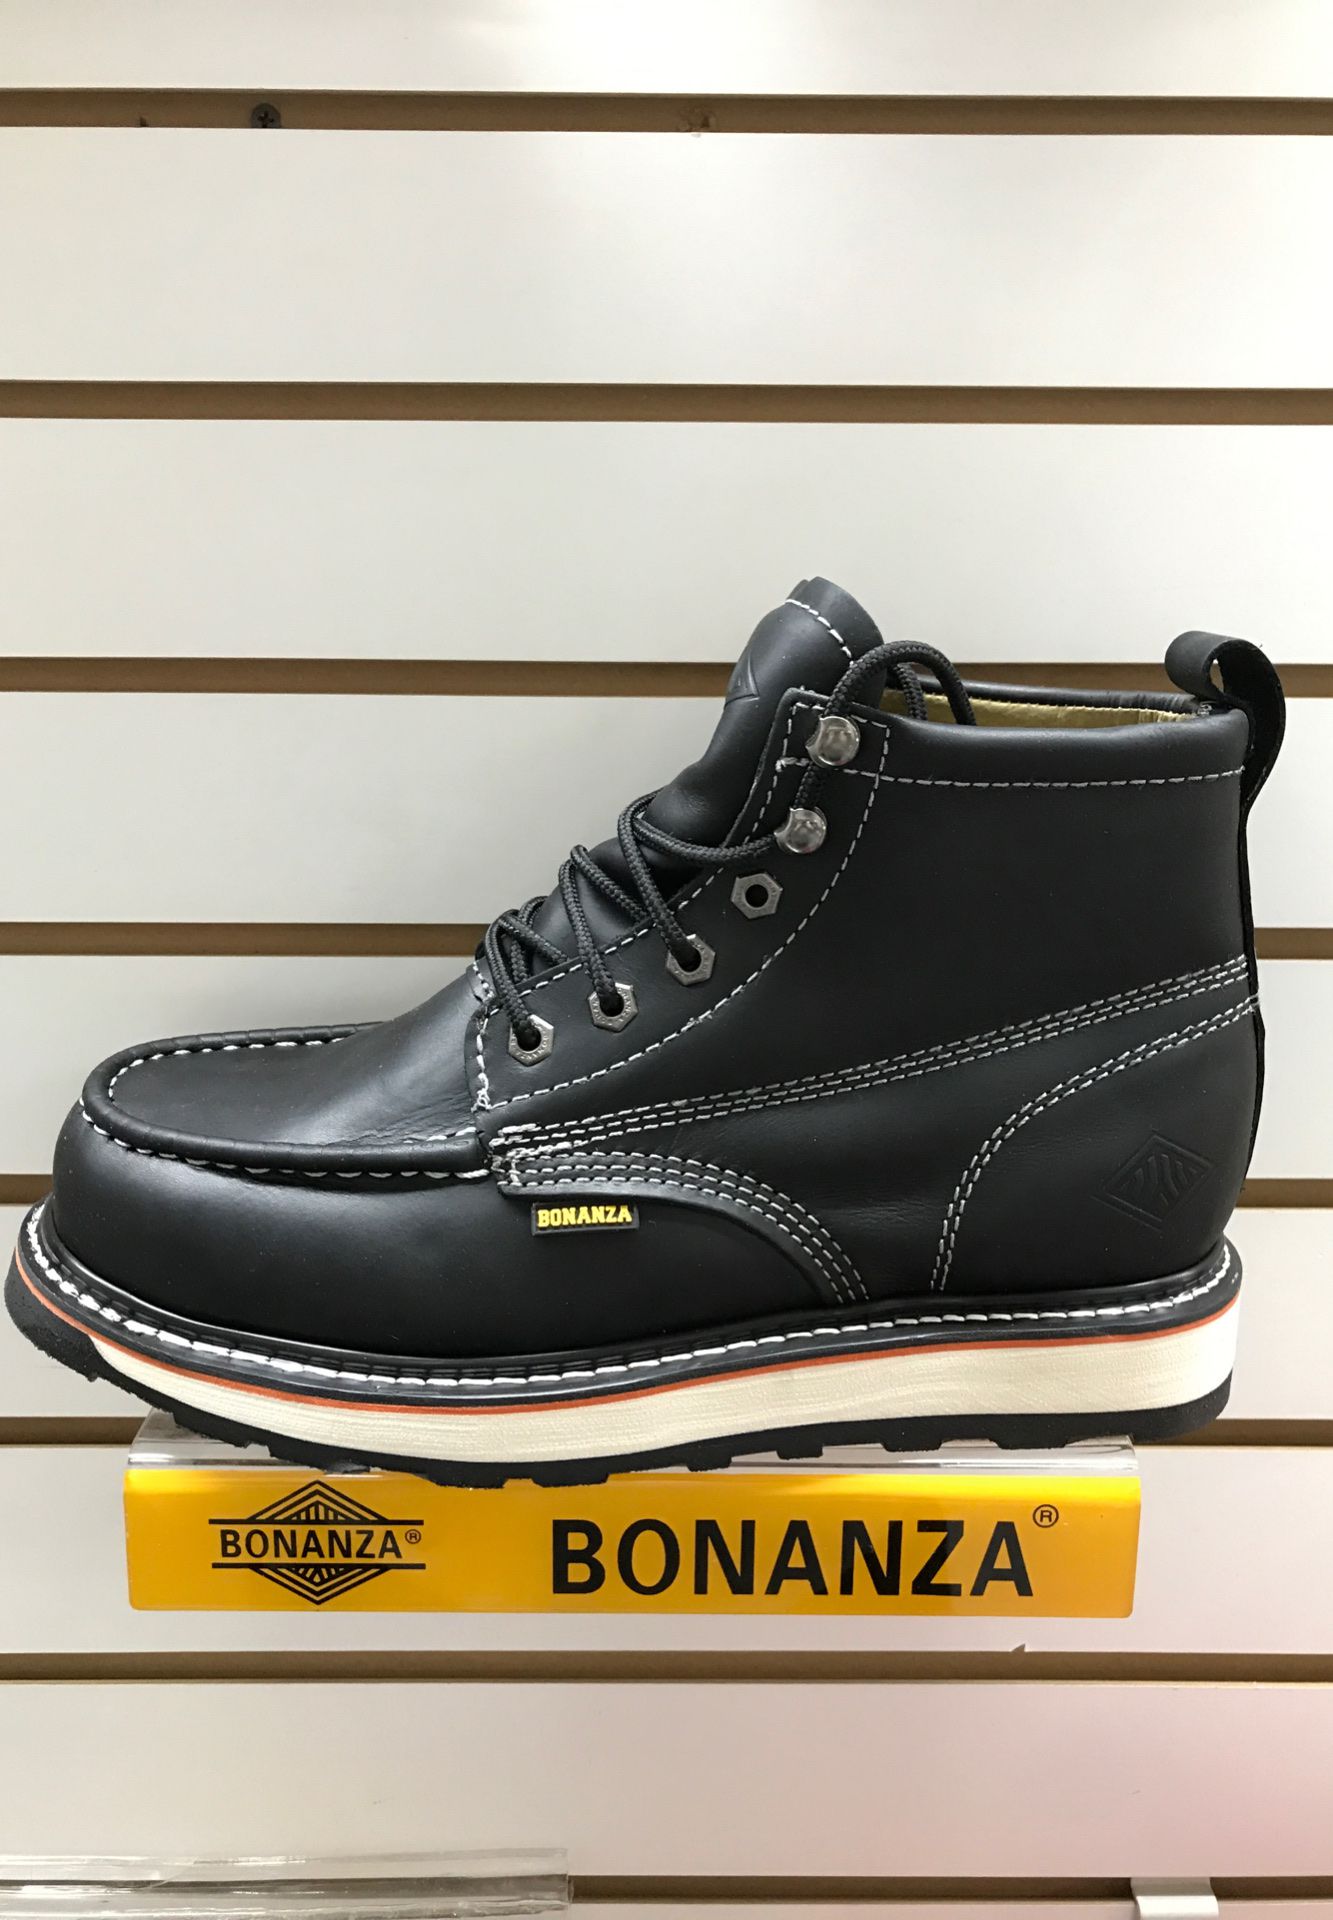 Bonanza Work boots, Hecho en Mexico